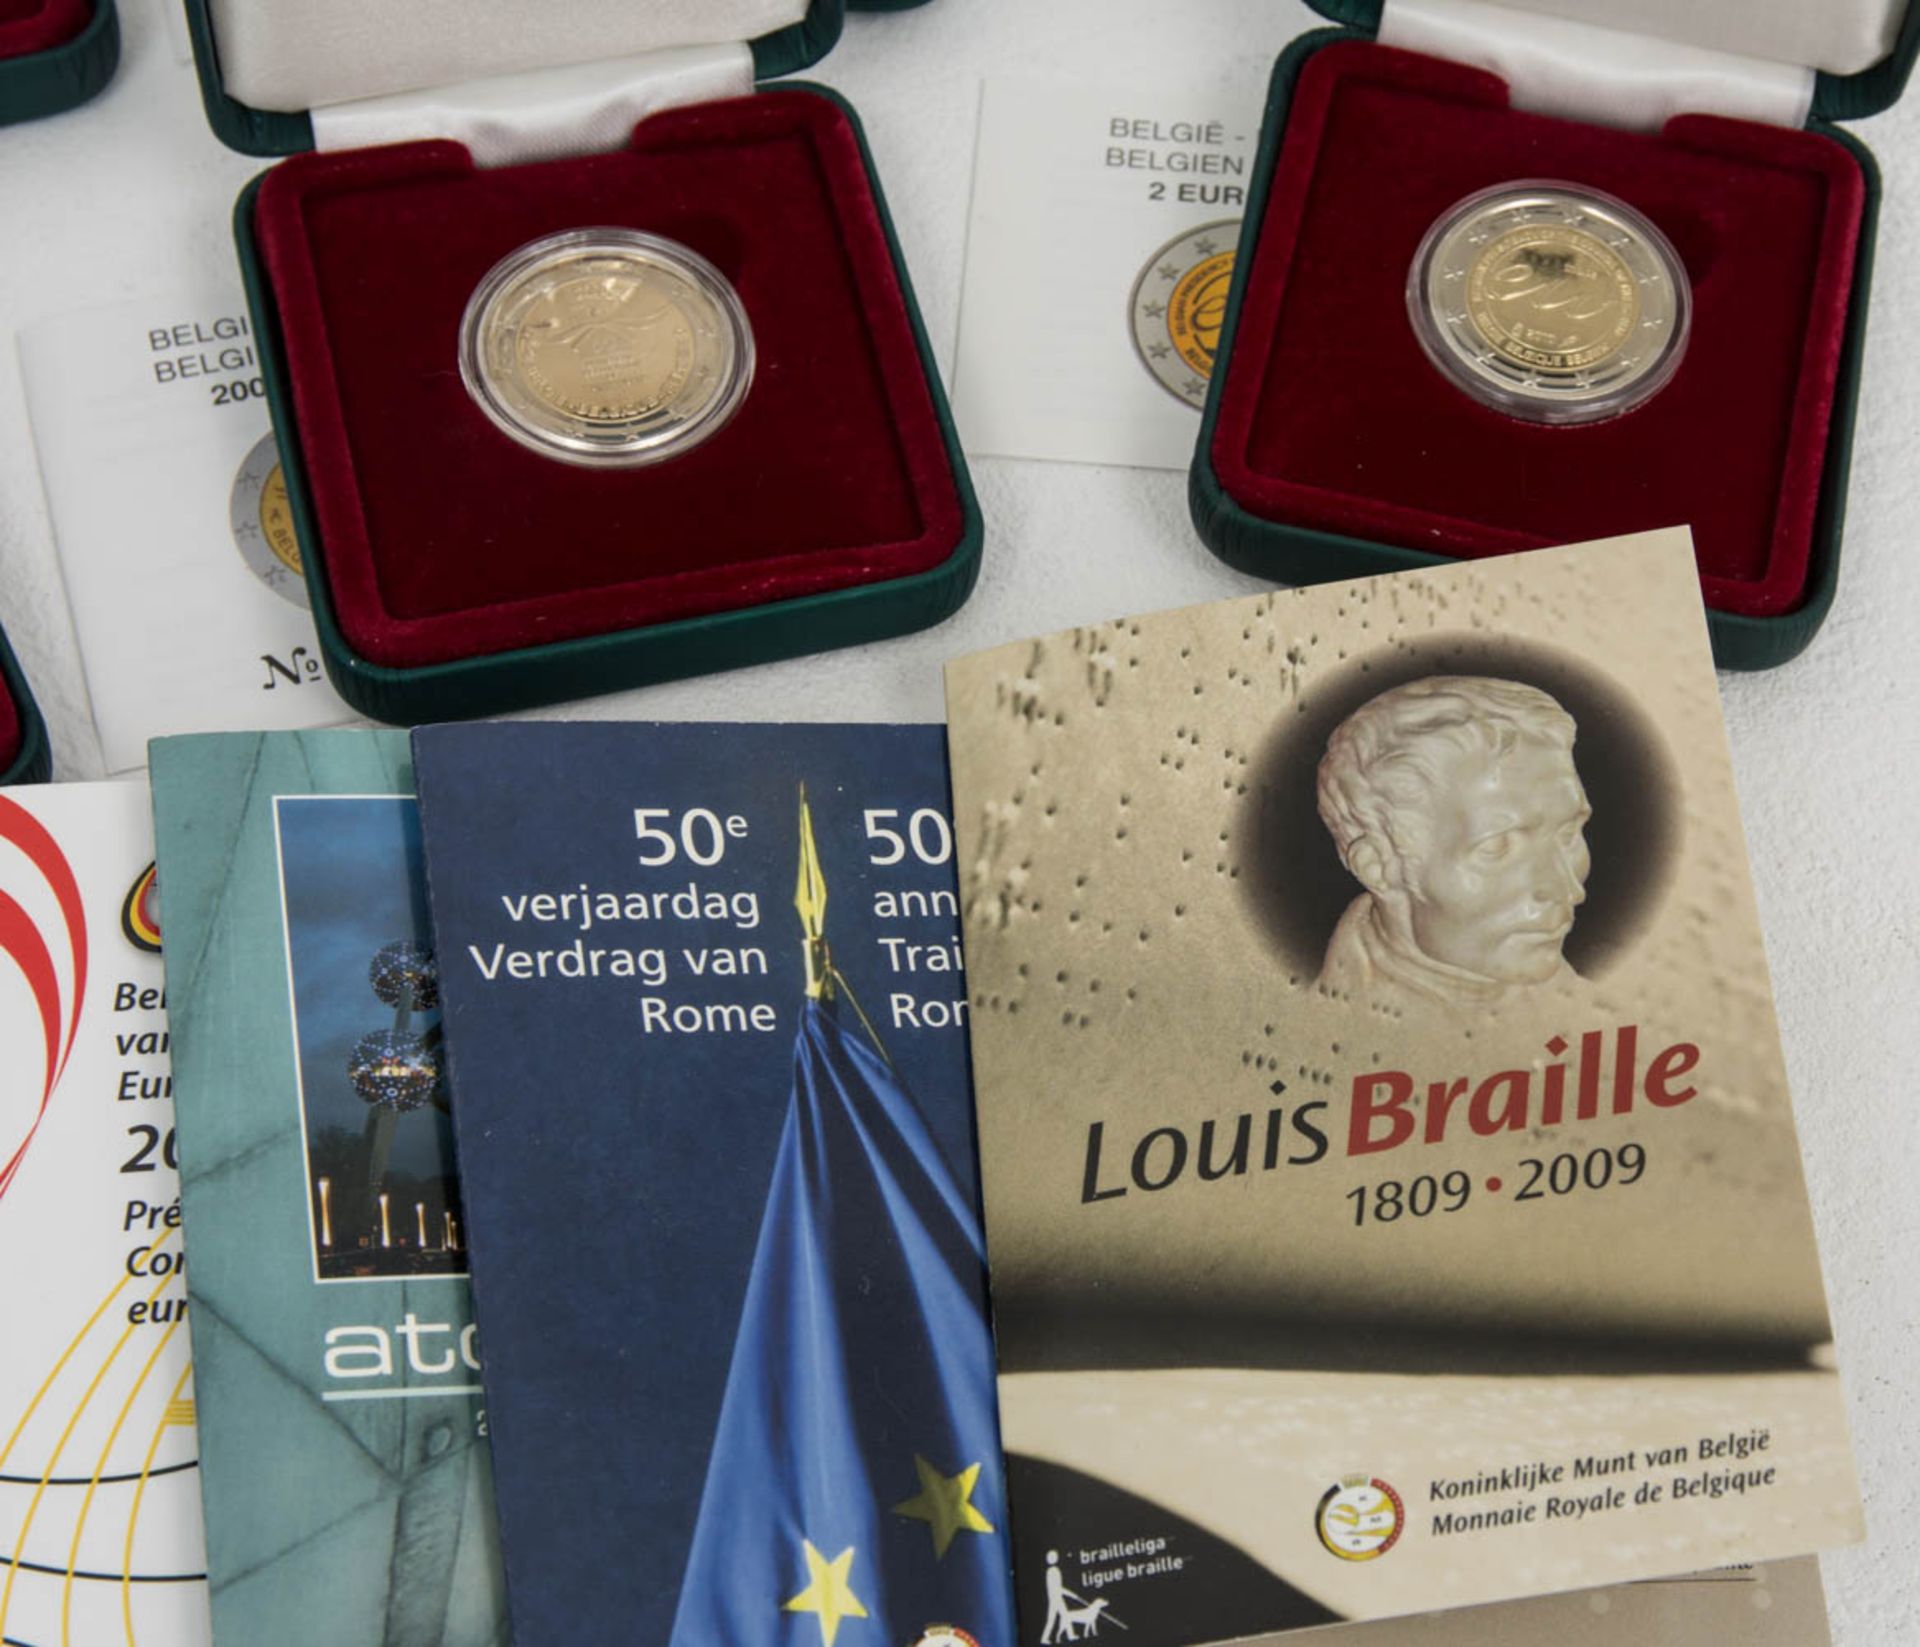 Sammlung Belgien 2 € Münzen.15 Stück, durchweg Sammlerqualität mit OVPs.Belgie - Bild 6 aus 6